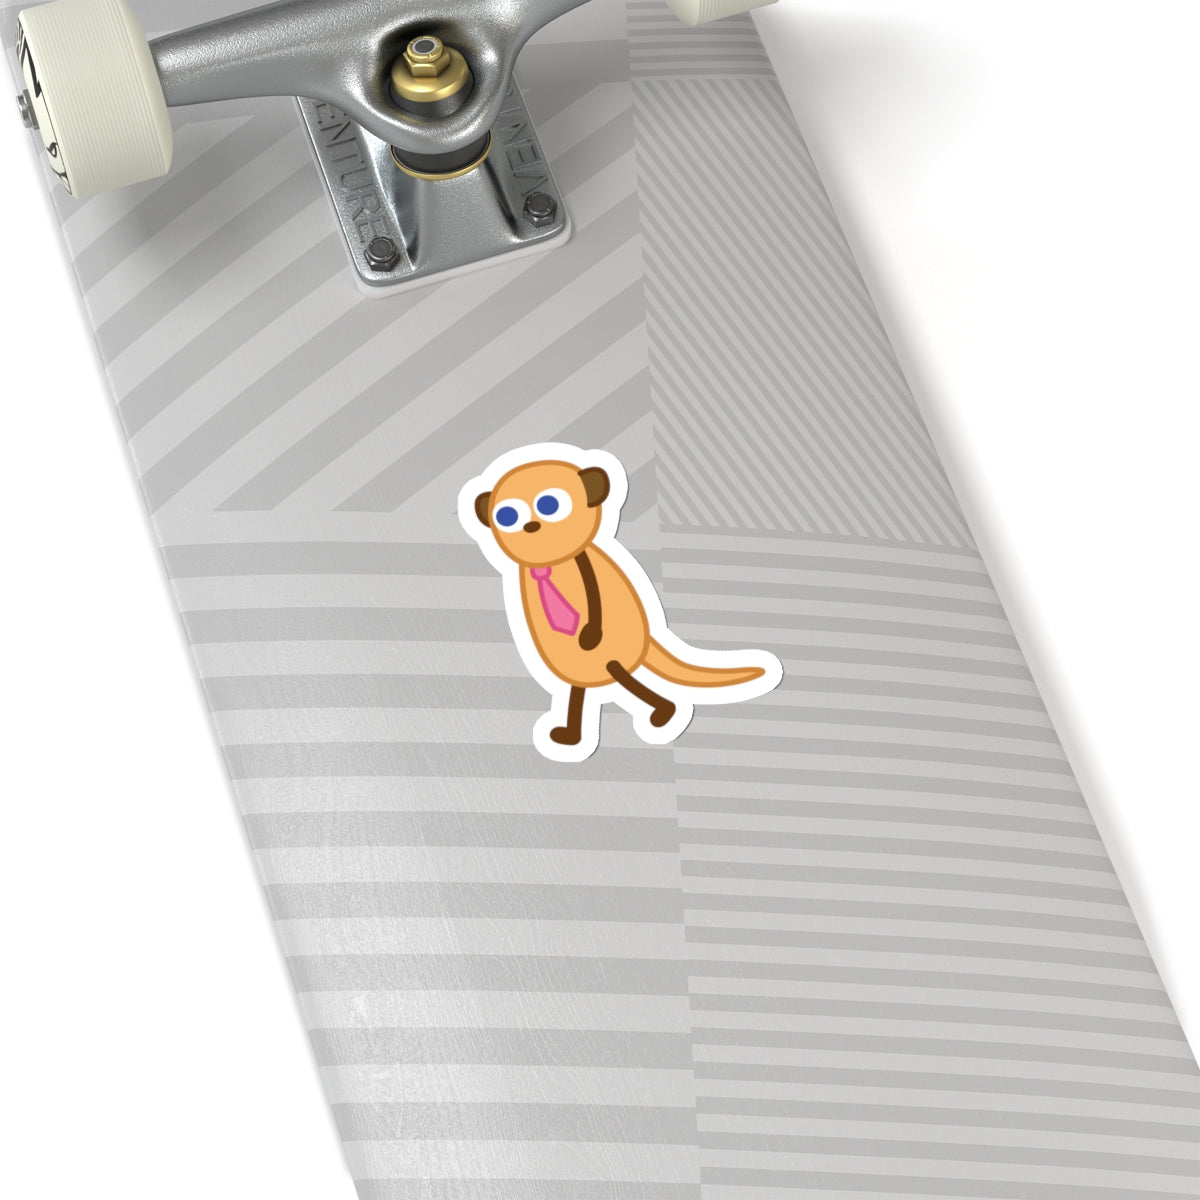 Mr. Meerkat sticker